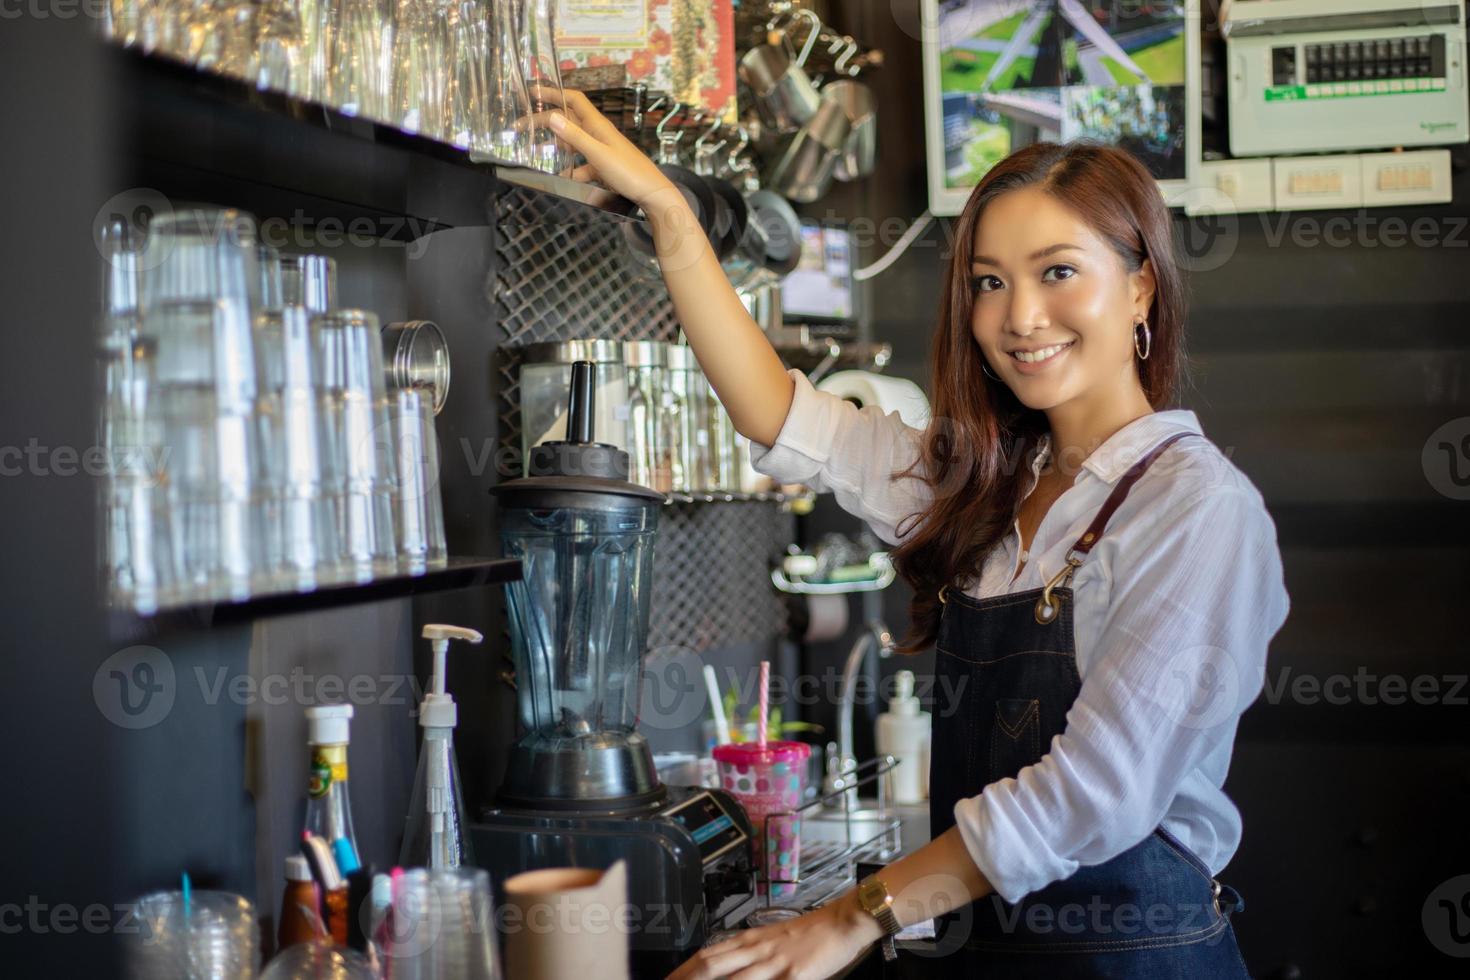 asiatiska kvinnor barista leende och använda kaffemaskin i kafédisk - arbetande kvinna småföretagare mat och dryck café koncept foto